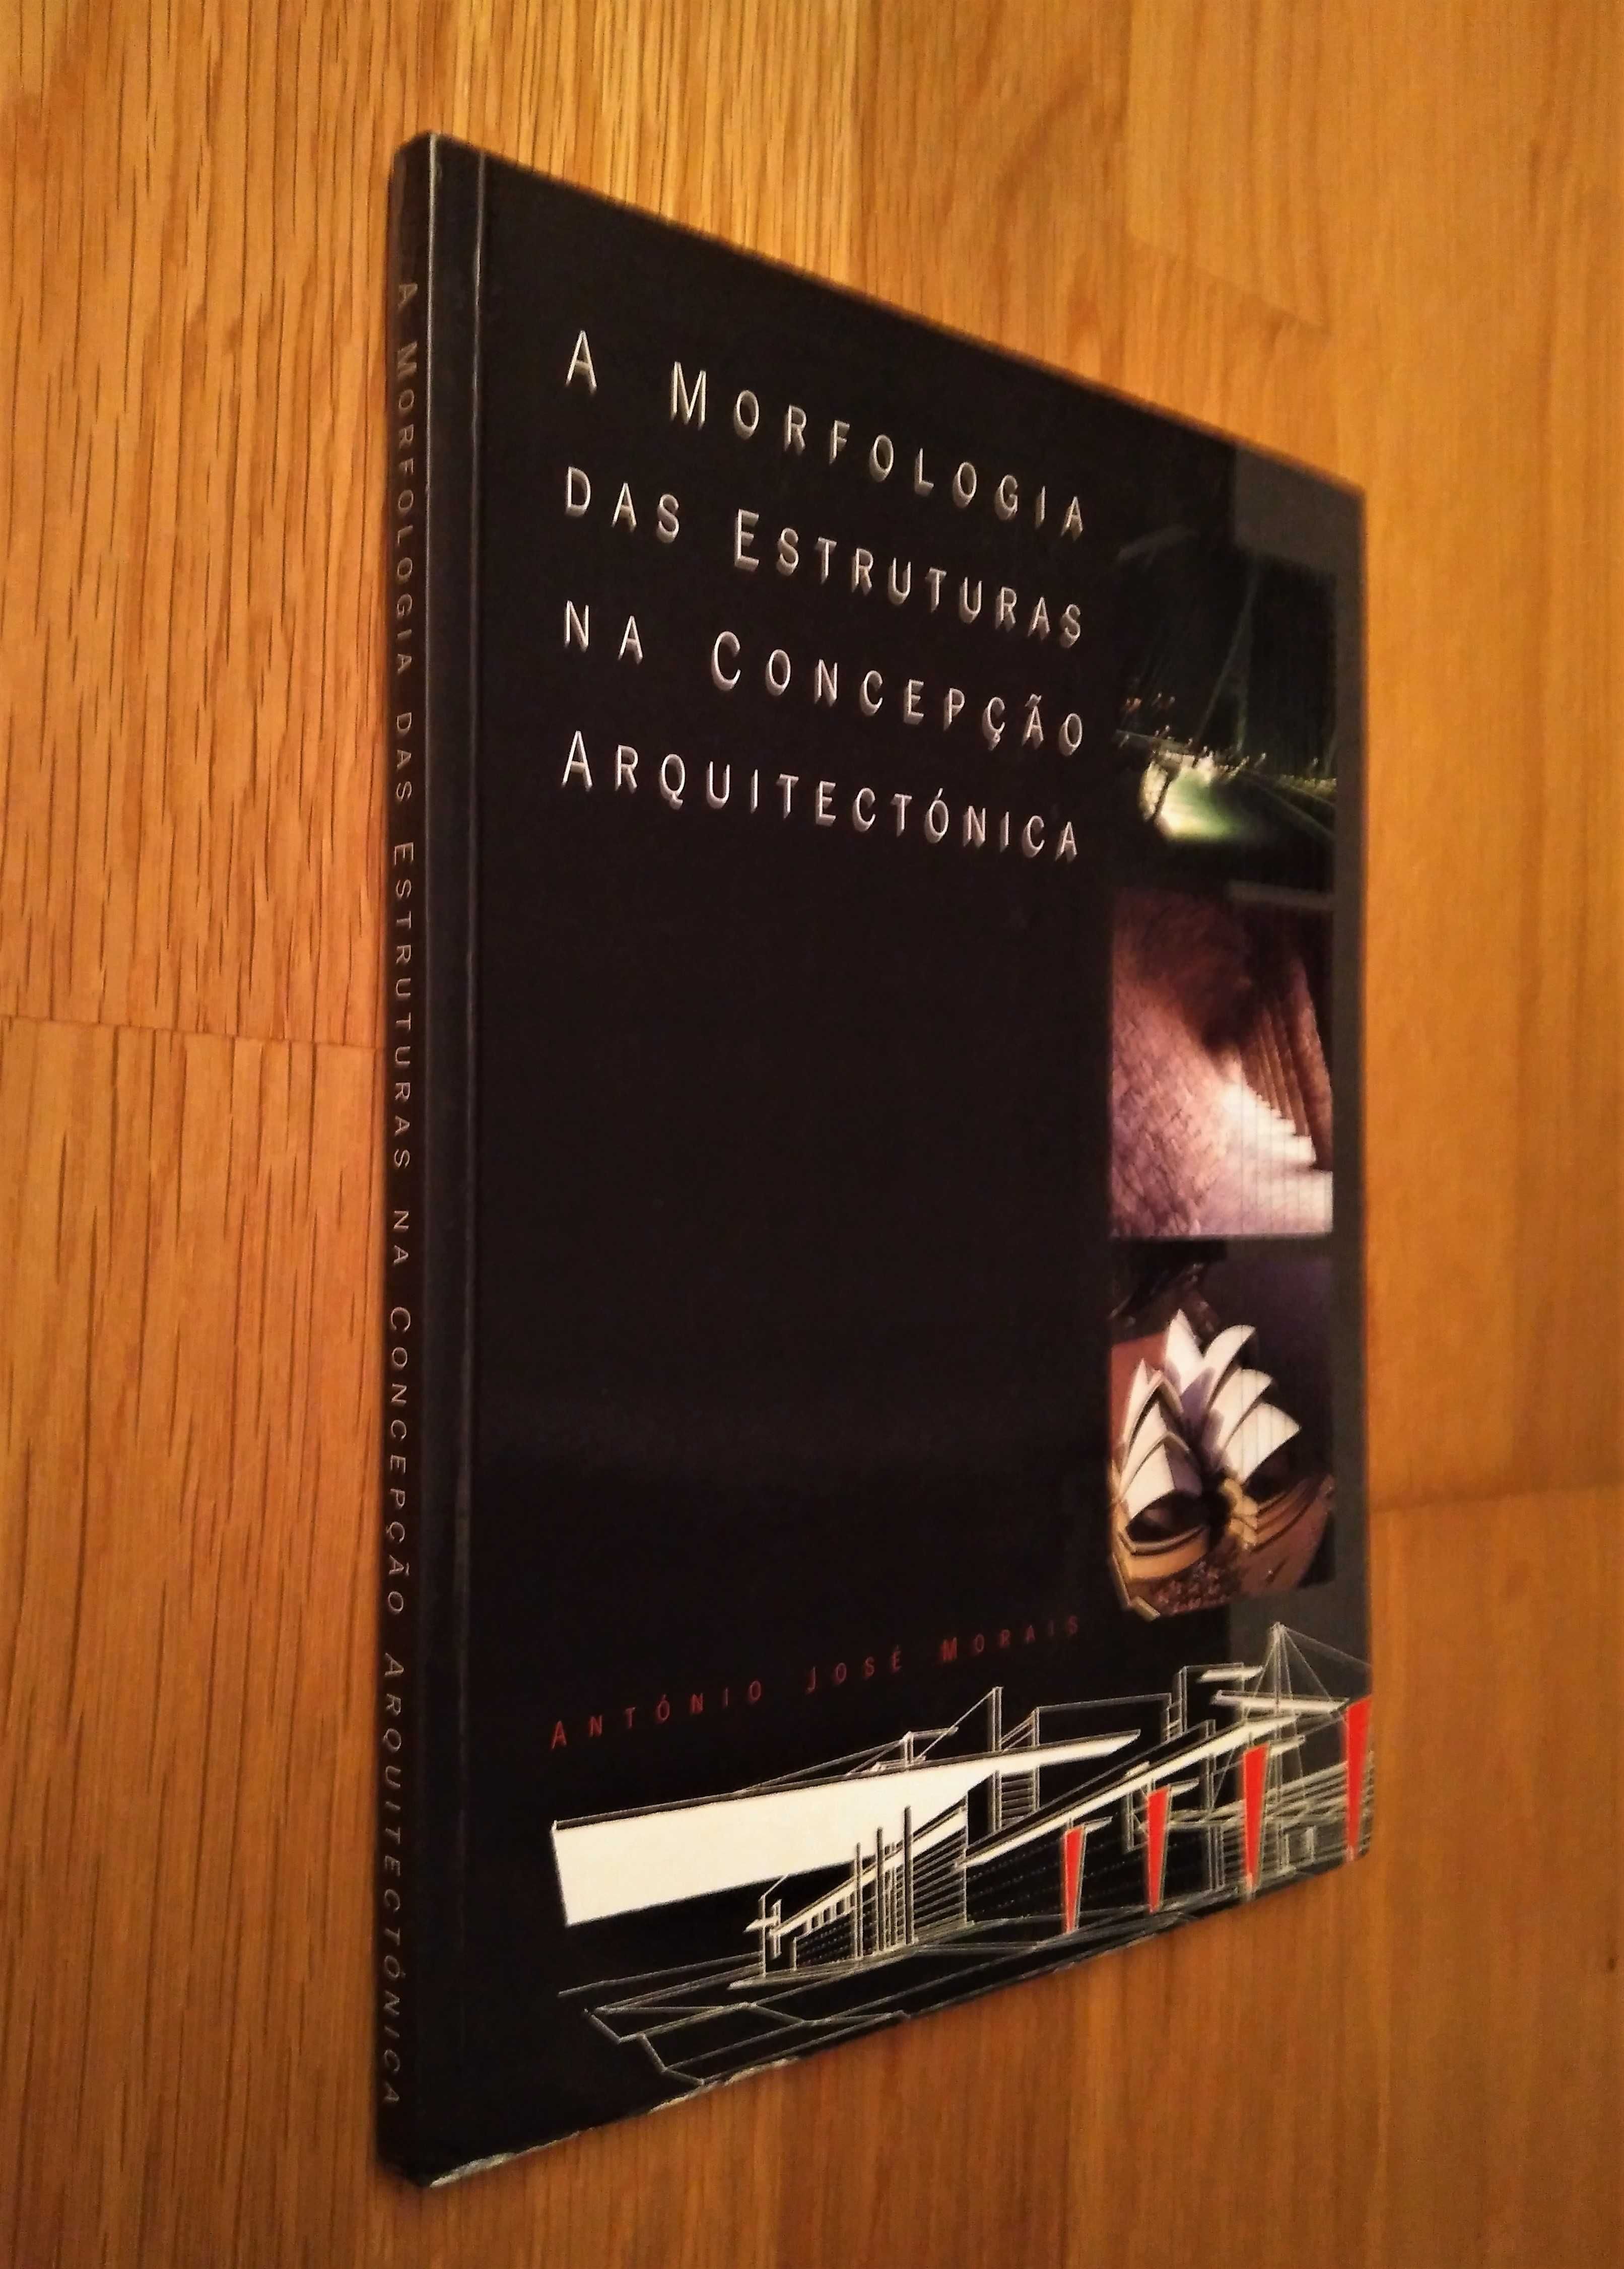 A. J. Morais - A Morfologia das Estruturas na Concepção Arquitectónica